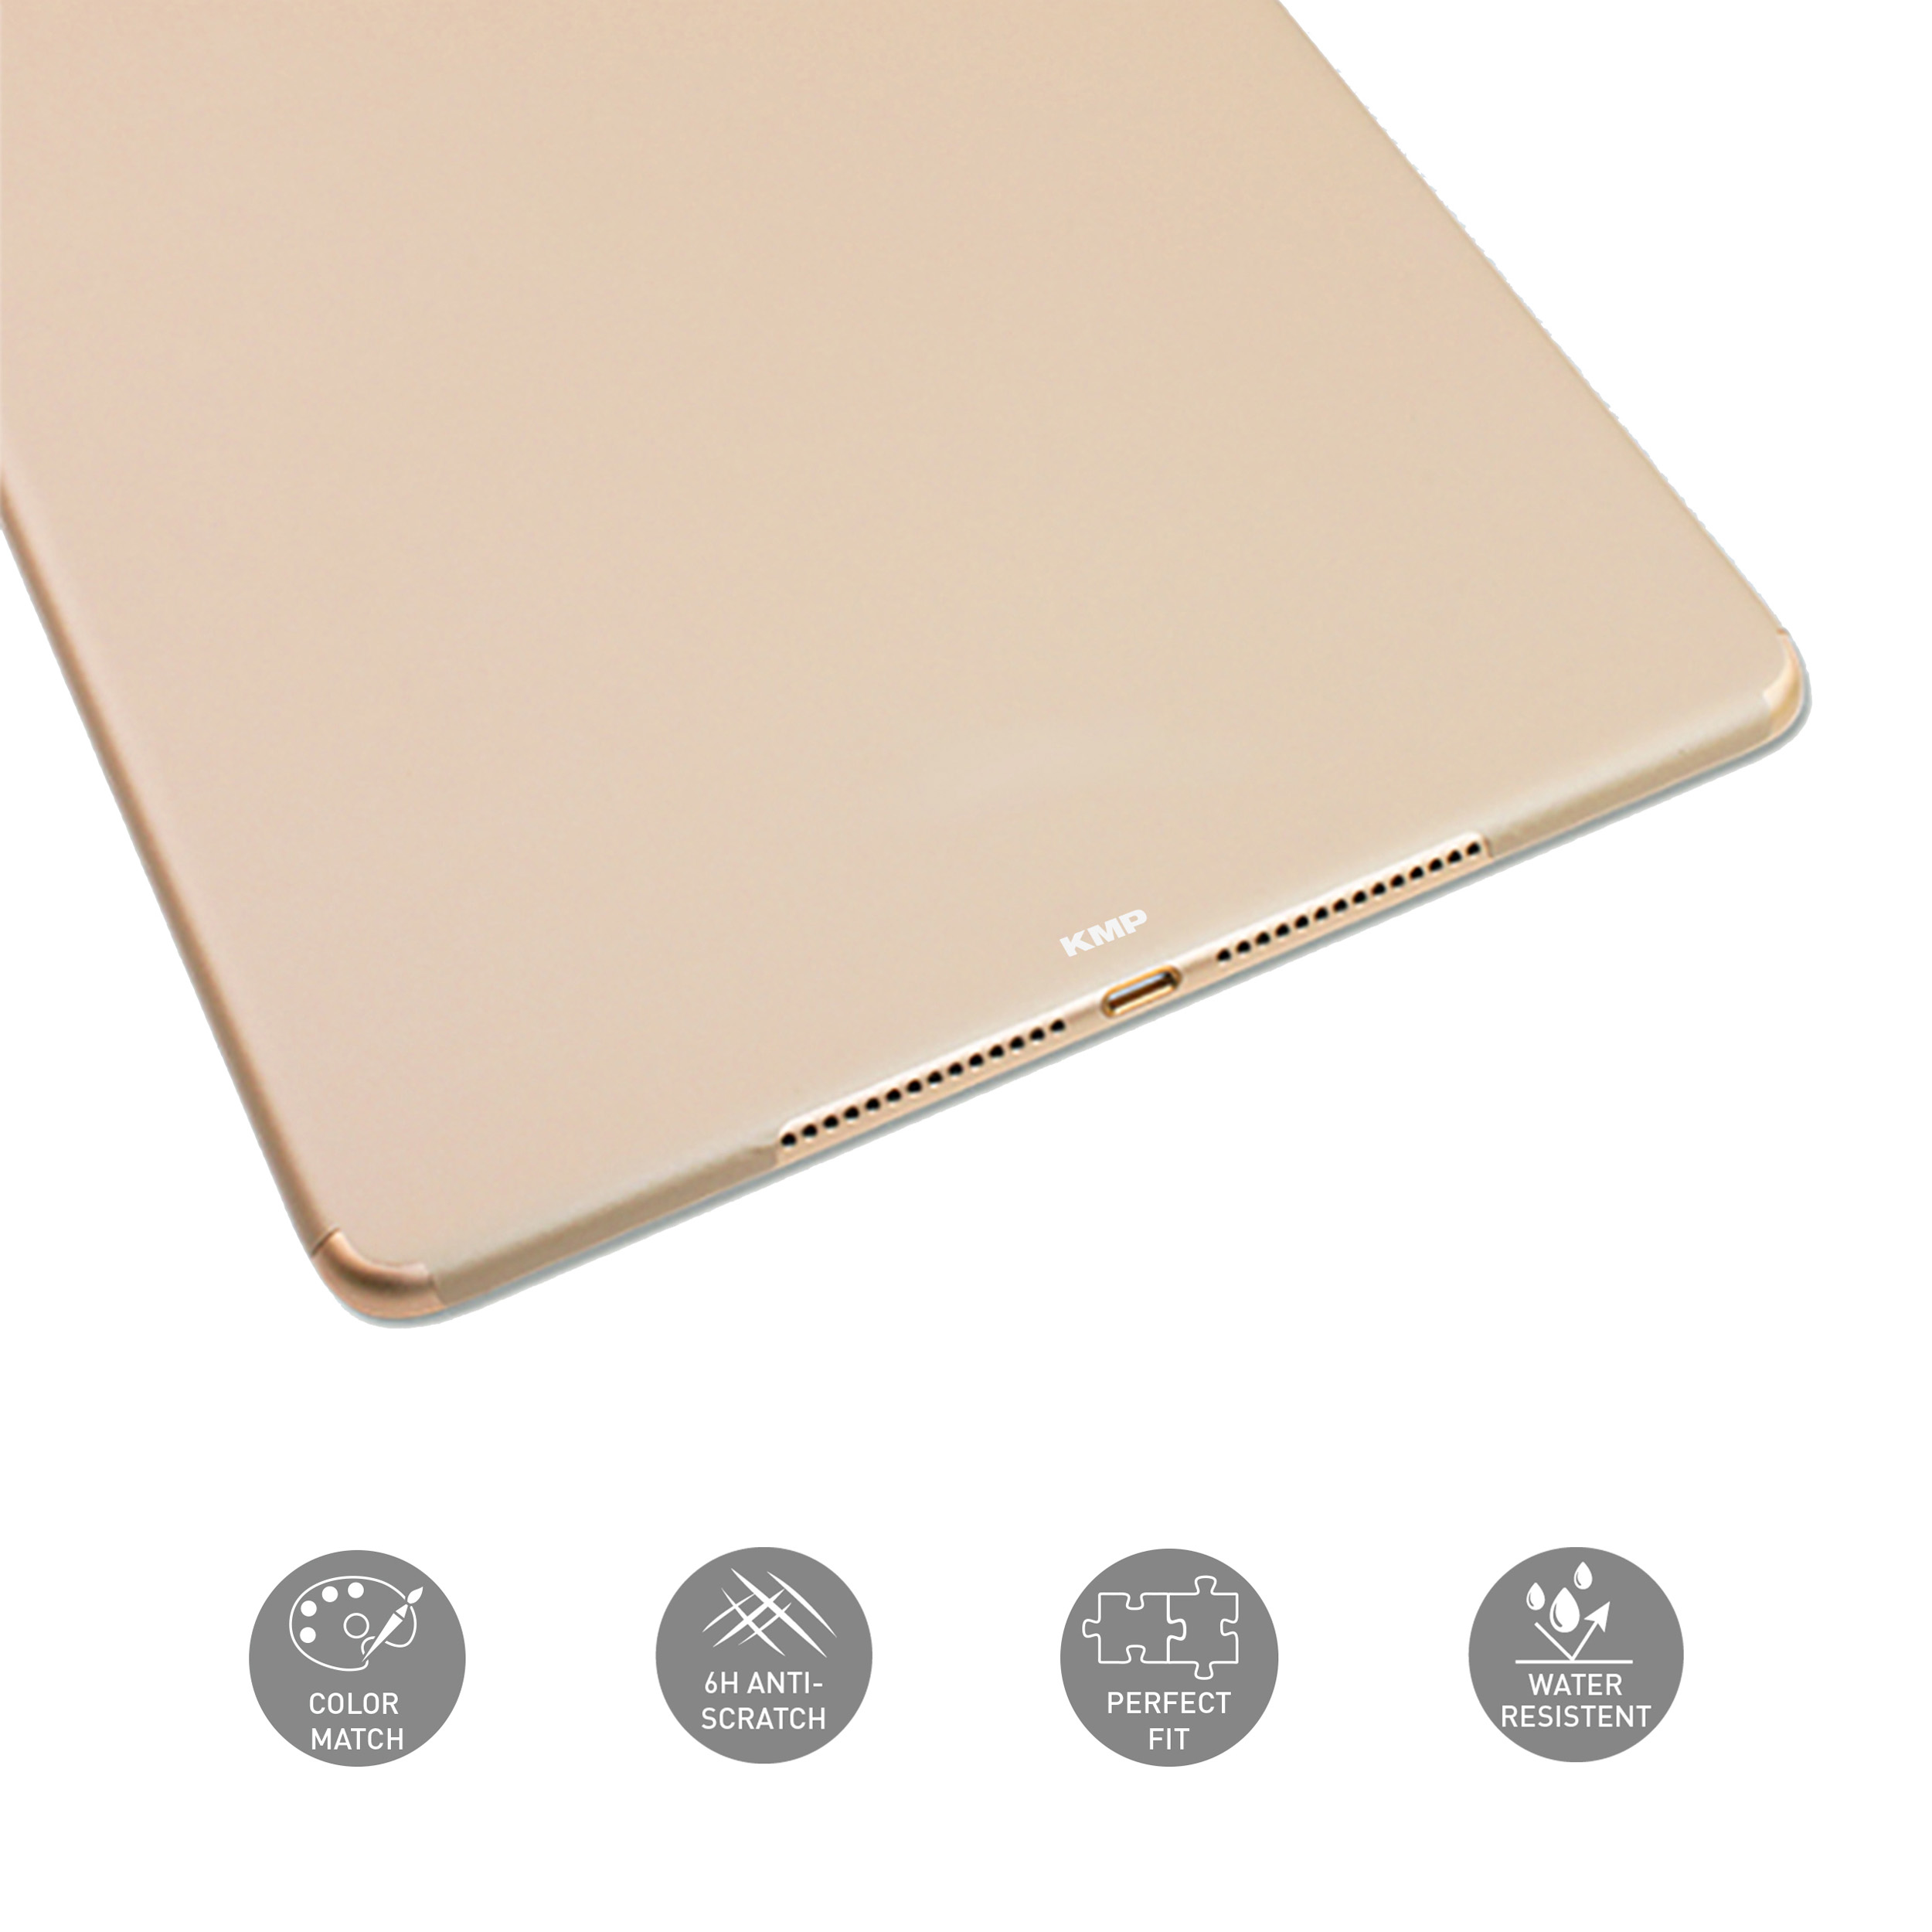 Apple 3M-Material, Schutzfolie Flip iPad Rückseite 6H KMP Protective skin Gold Mini für AntiScratchLevel, Vinylfilm, gold 4 für Cover